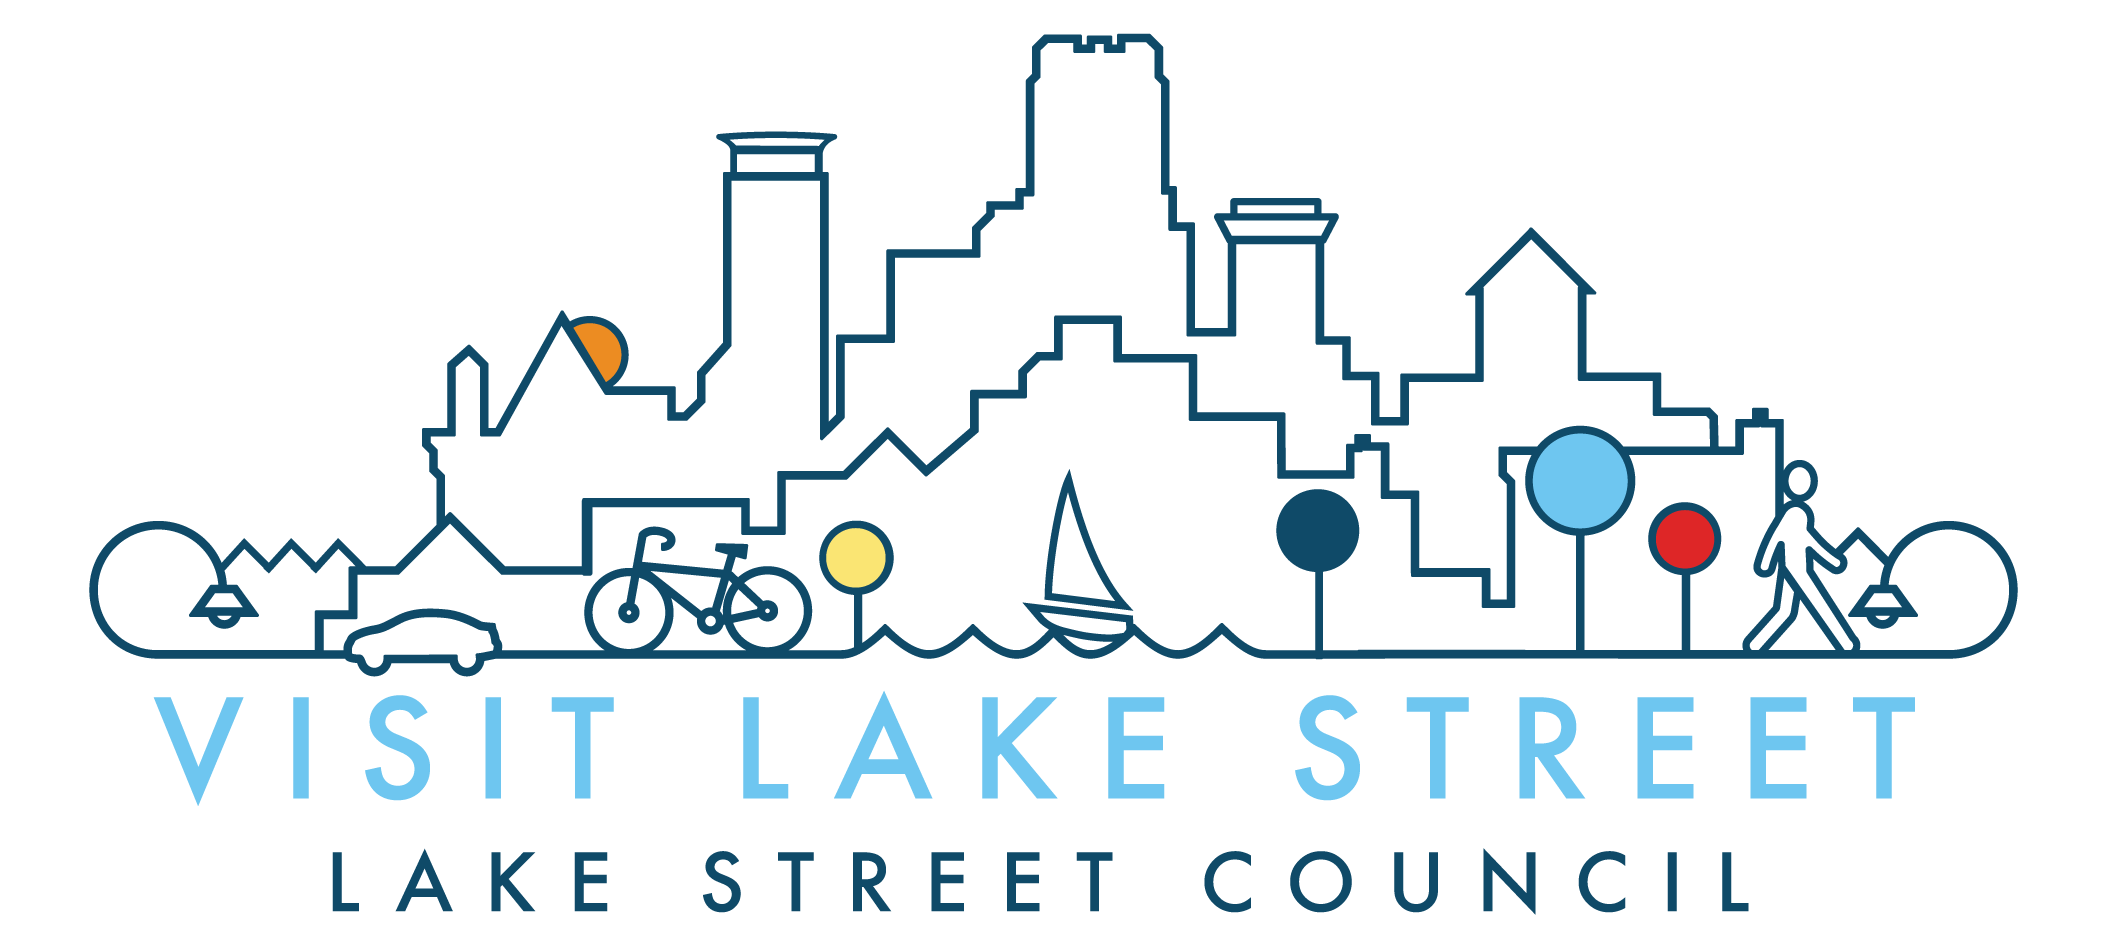 Lake Street Council